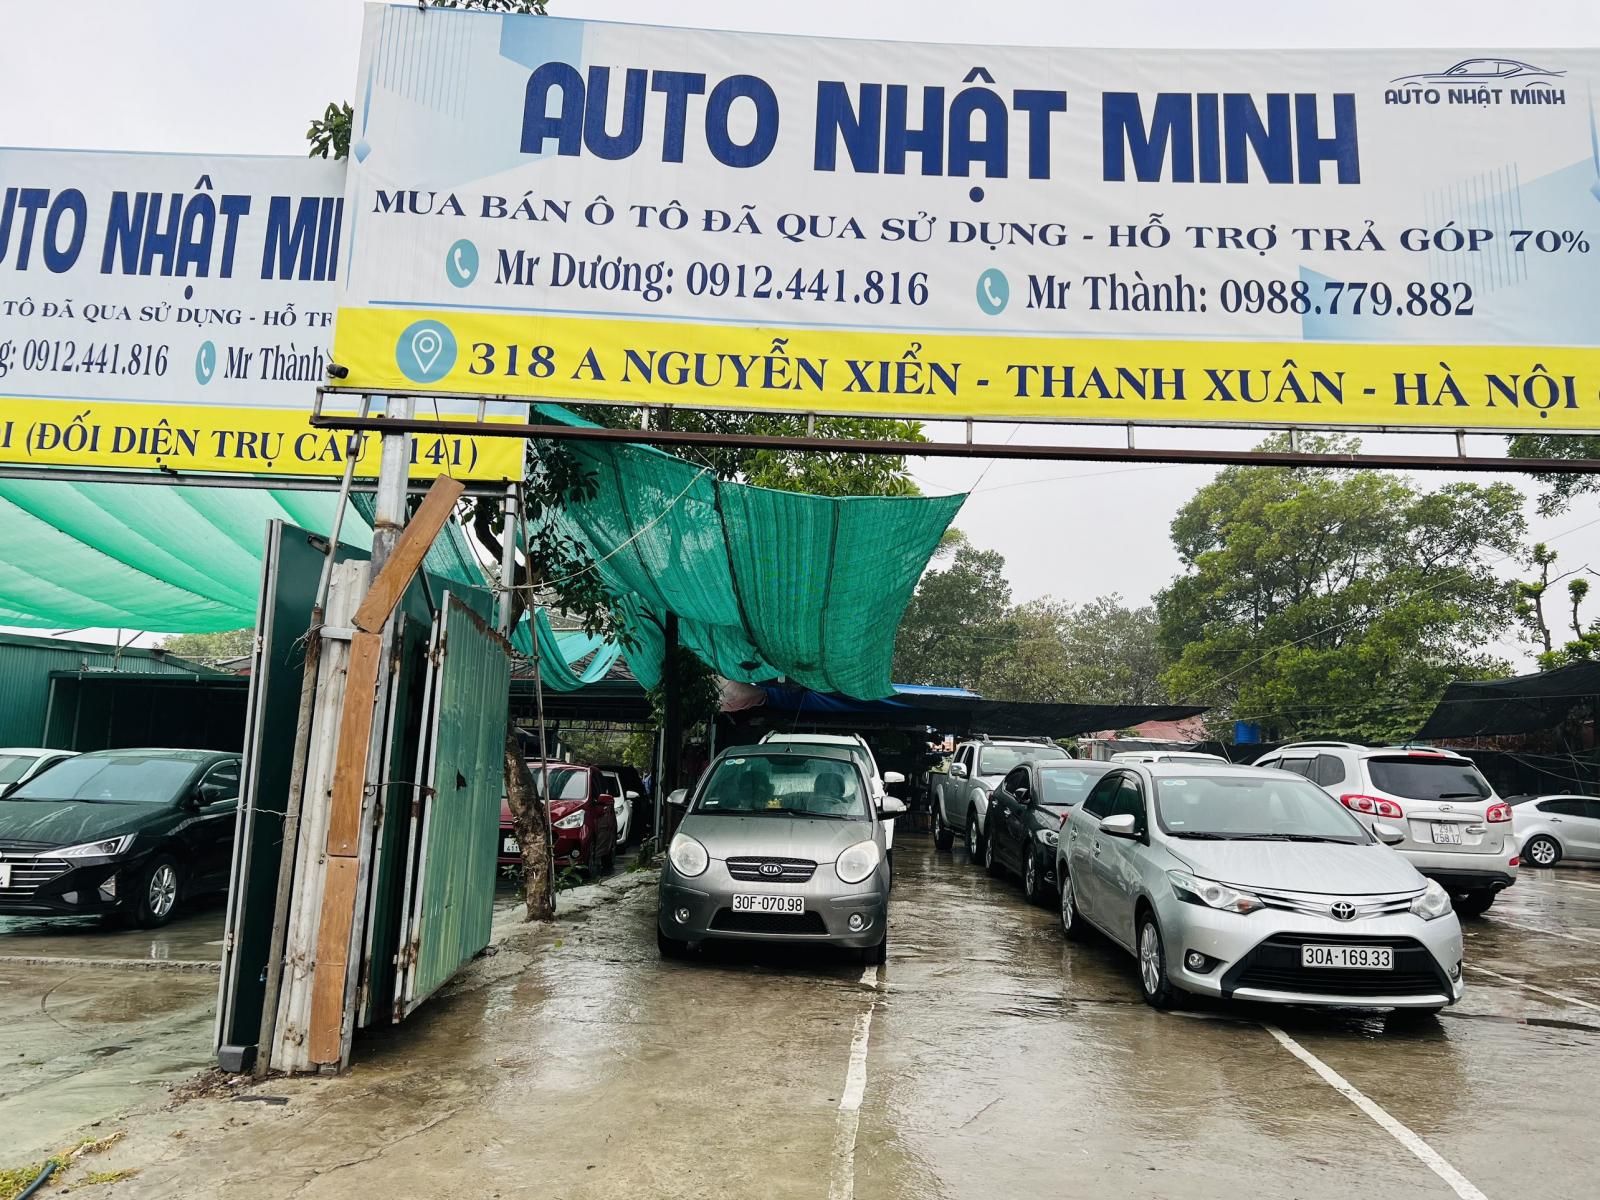 Auto Nhật Minh